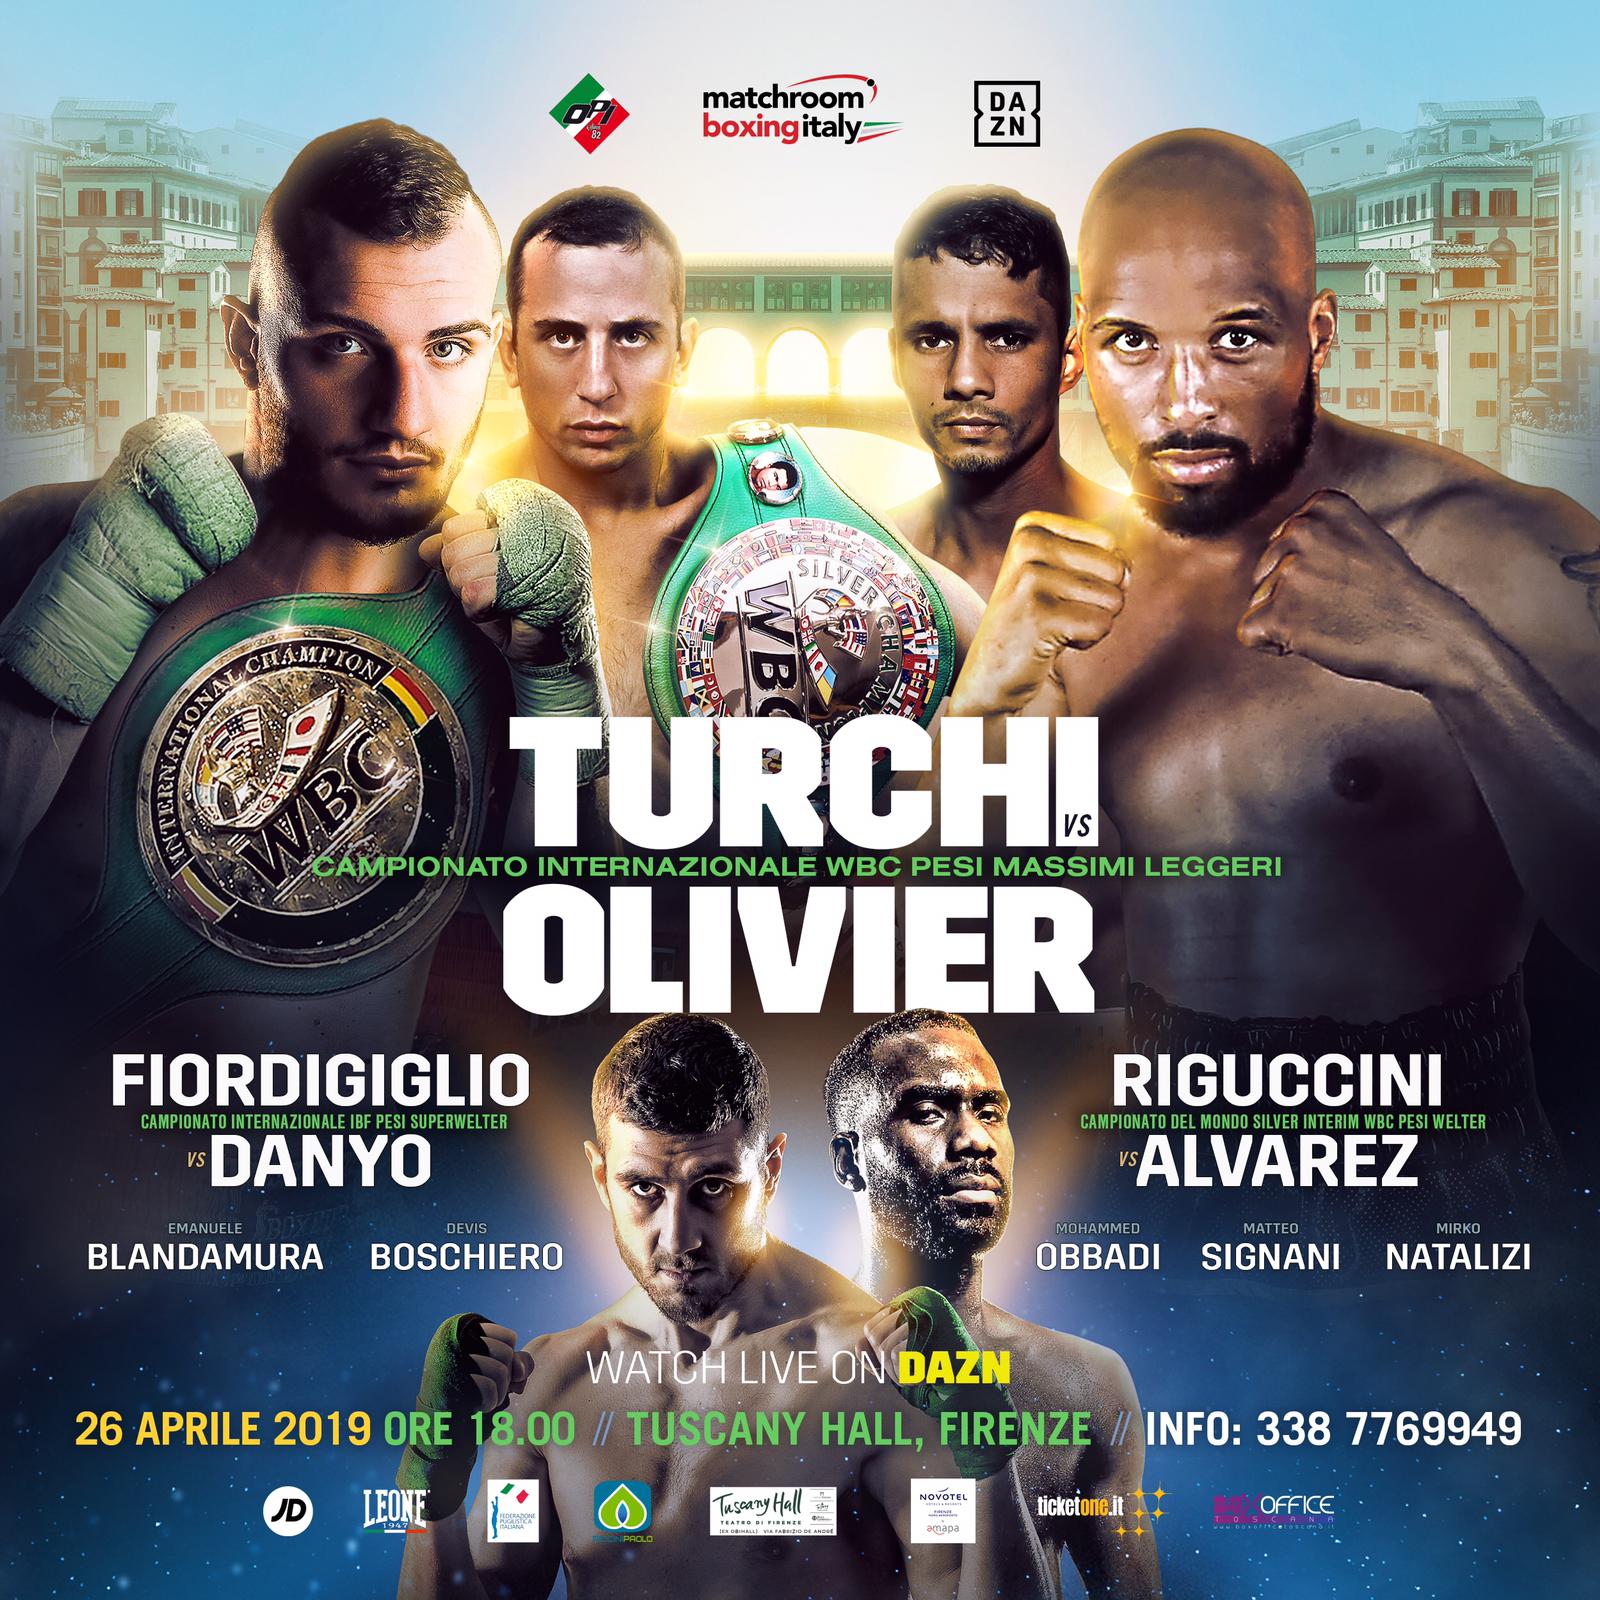 E’ caccia al biglietto per la grande serata di boxe del 26 aprile a Firenze: nel clou Fabio Turchi contro Jean Jacques Olivier per il titolo internazionale dei pesi massimi leggeri WBC